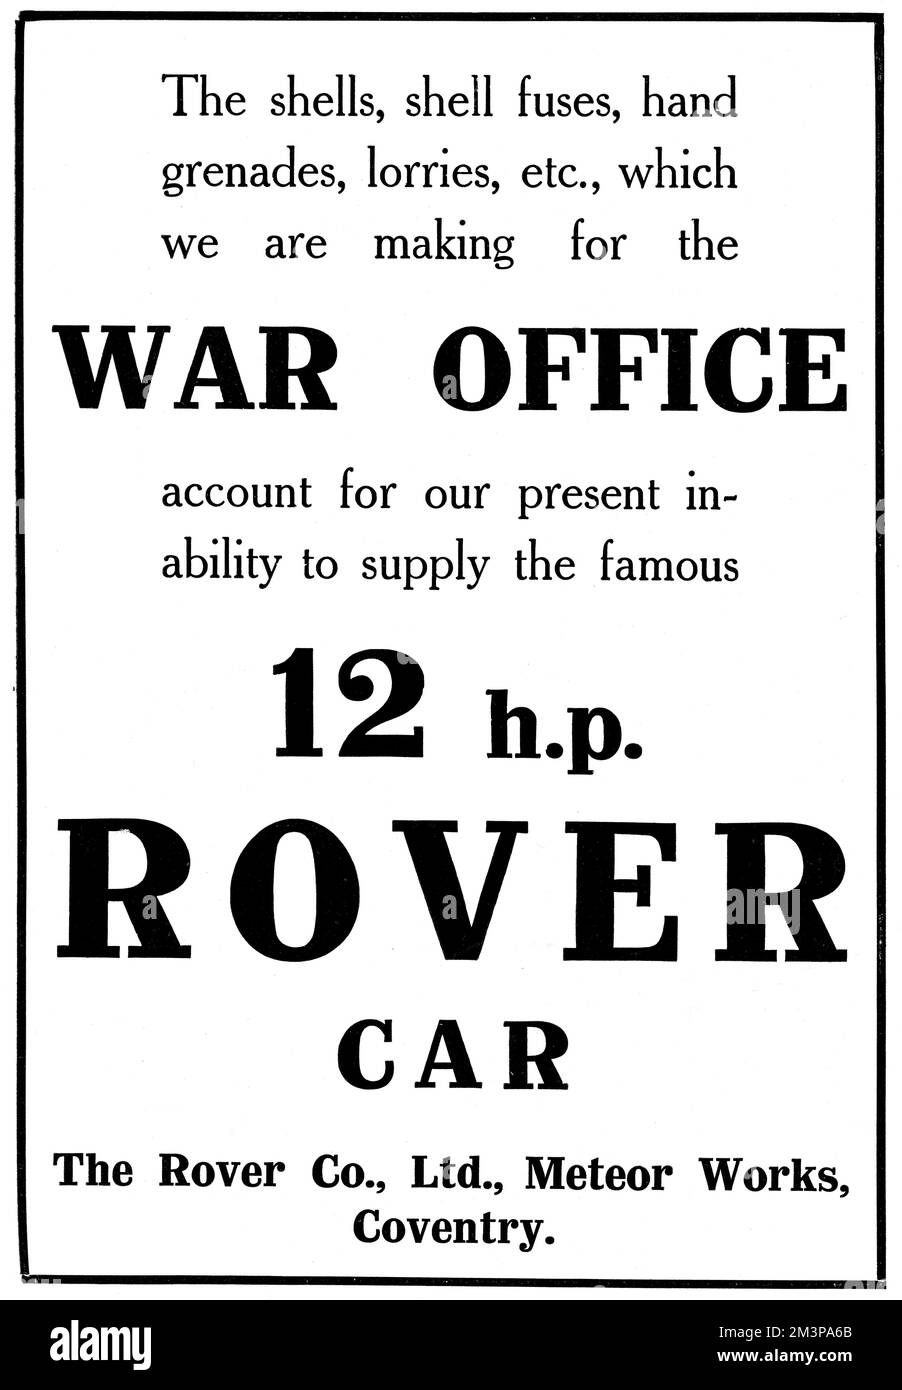 Une publicité simple et directe placée dans le magazine Tatler en 1915 par la société Rover de Coventry informant les lecteurs que la voiture 12 hp Rover était indisponible en raison de l'attention de la société se tournant vers la fabrication de coques, de fusibles à coque, de grenades à main, de camions, etc. Pour le bureau de guerre. 1915 Banque D'Images